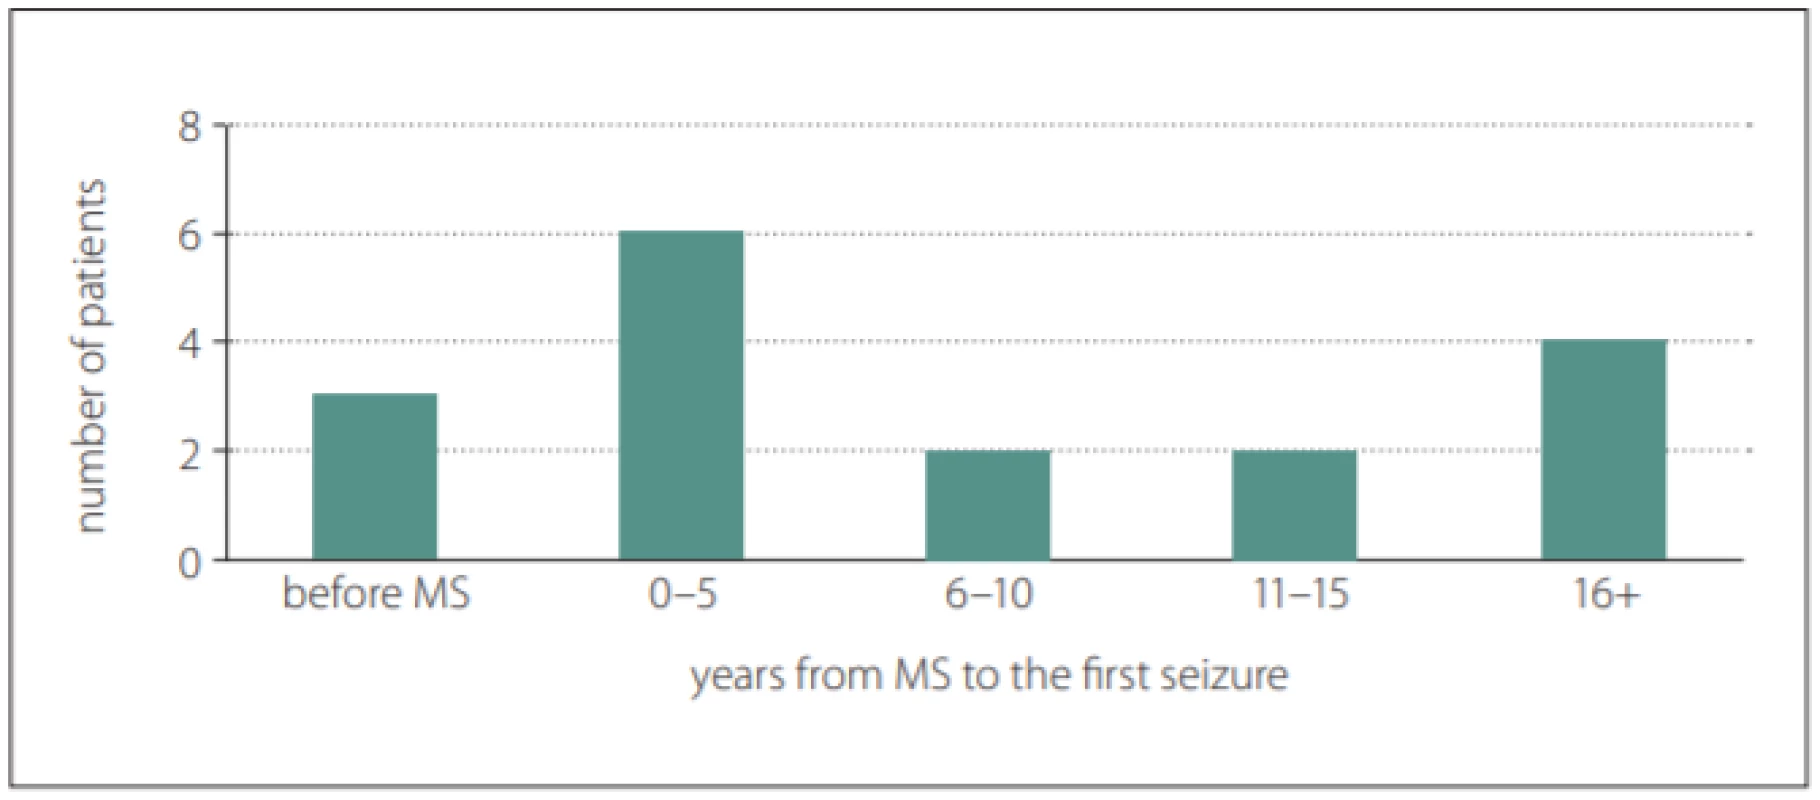 Latency from the first symptom of MS to the first seizure.<br>
Obr. 1. Latence od prvního symptomu RS k prvnímu záchvatu